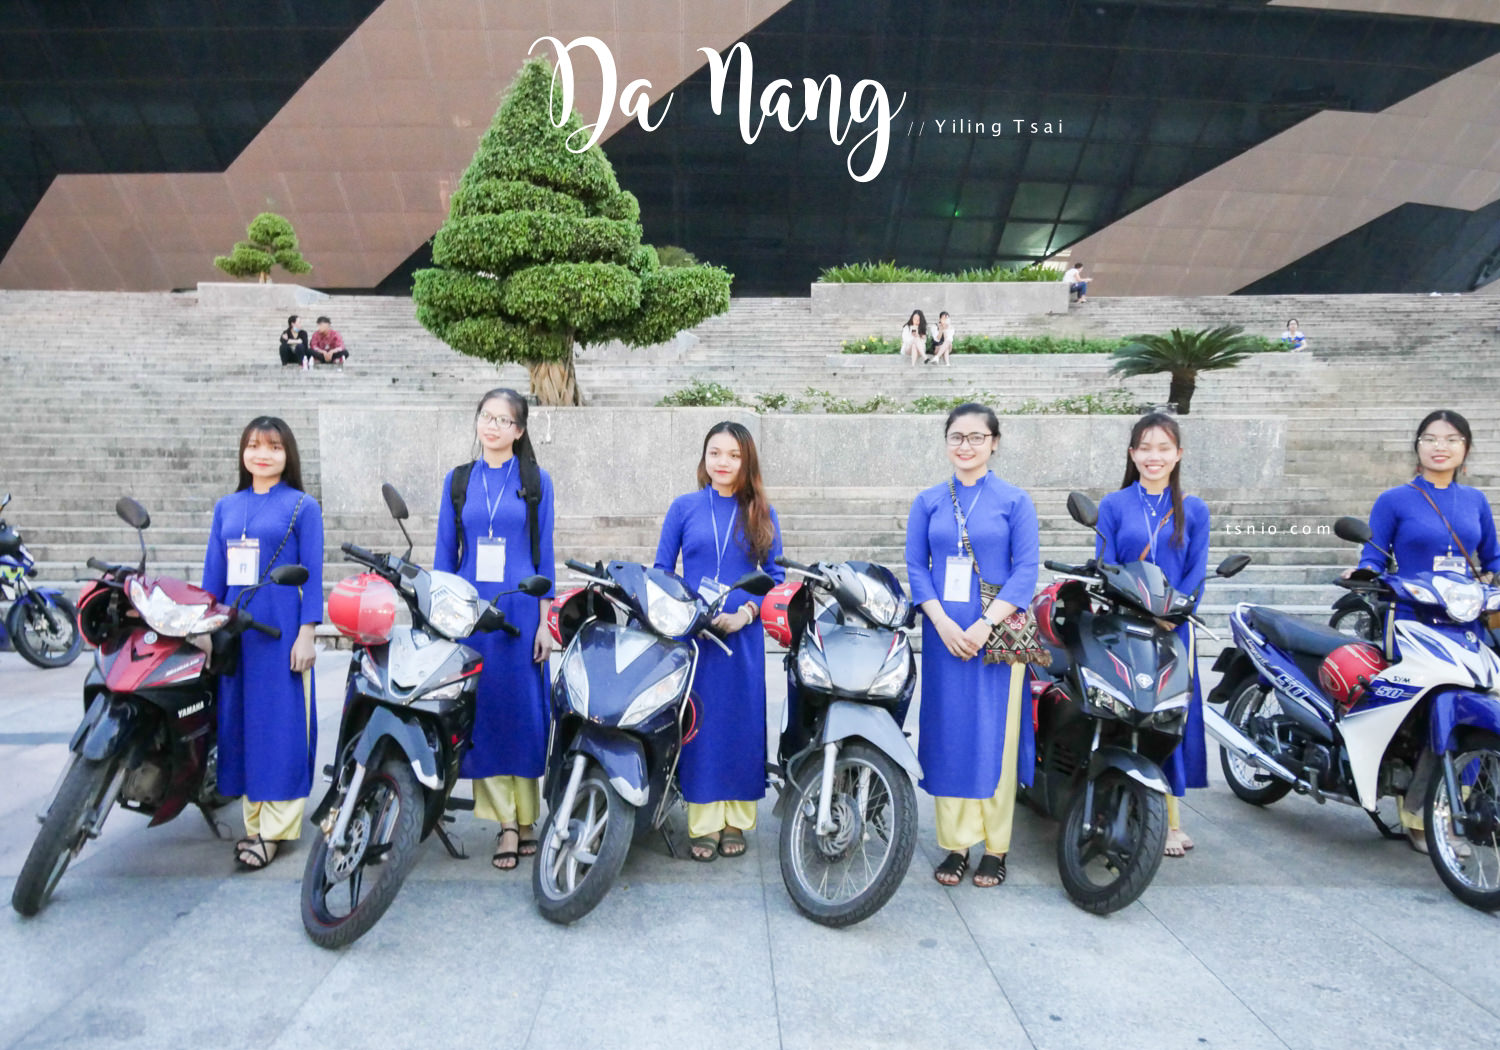 越南中部旅遊 峴港、會安、順化 精彩特色活動大集合